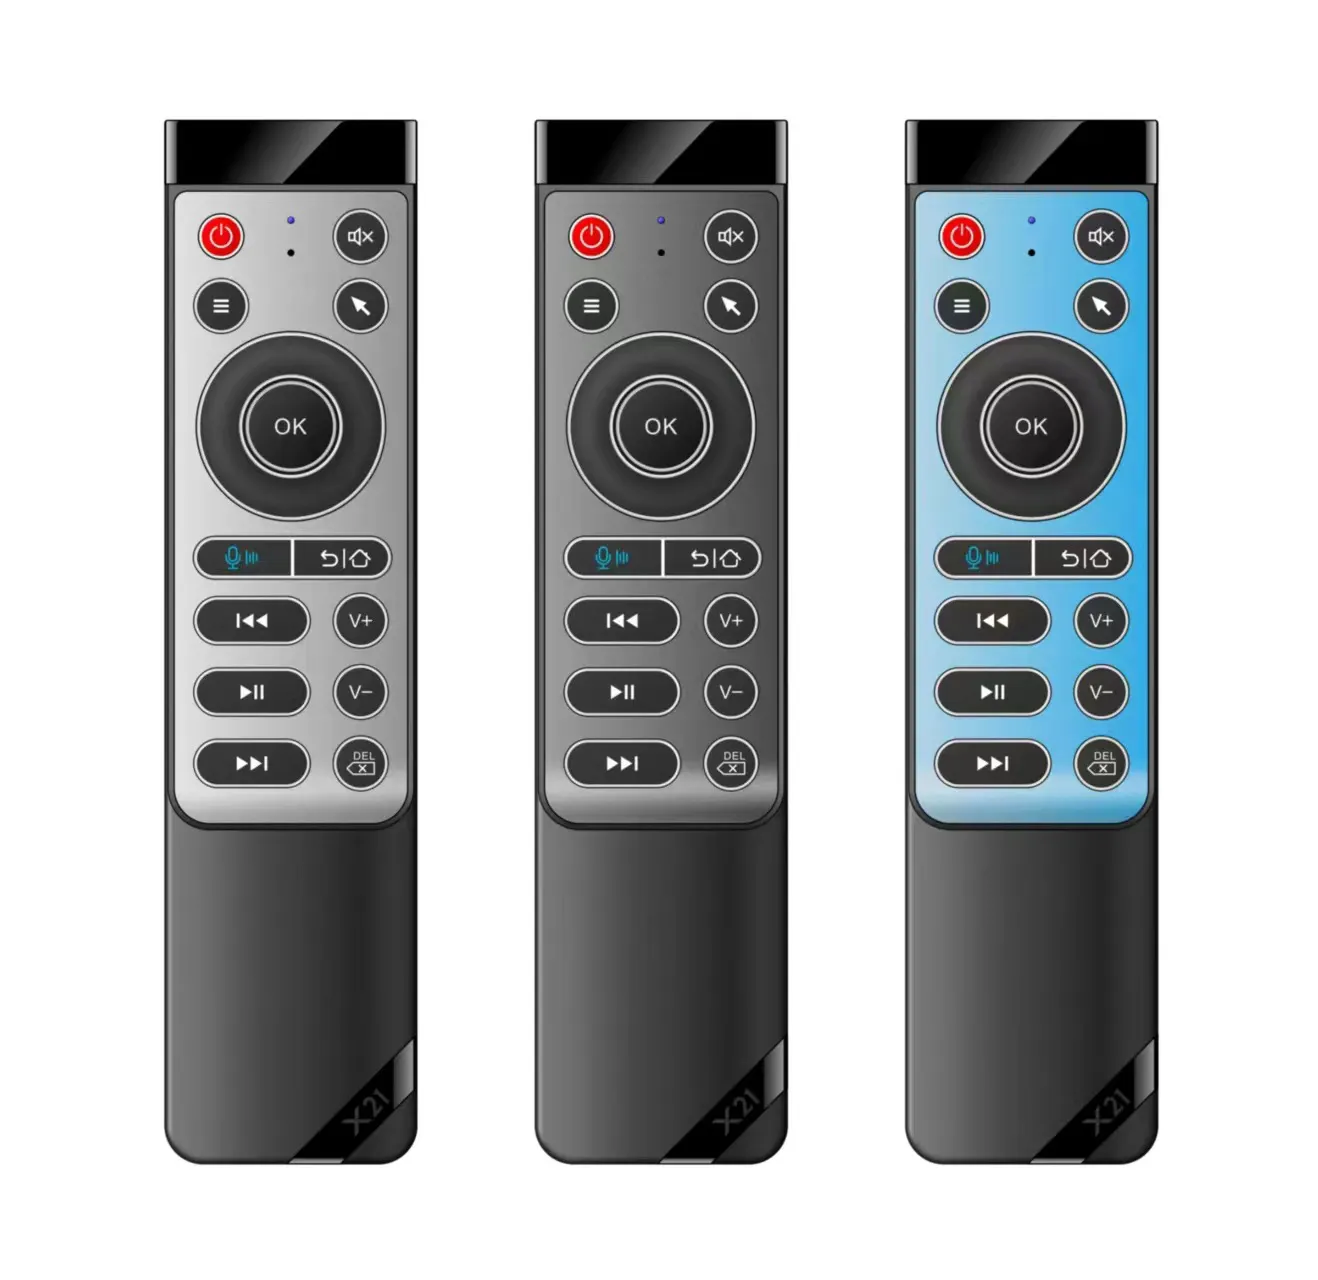 Voix sans fil bluetooth X21 Pro télécommande intelligente souris à air infrarouge télécommande d'apprentissage pour tv box projecteur